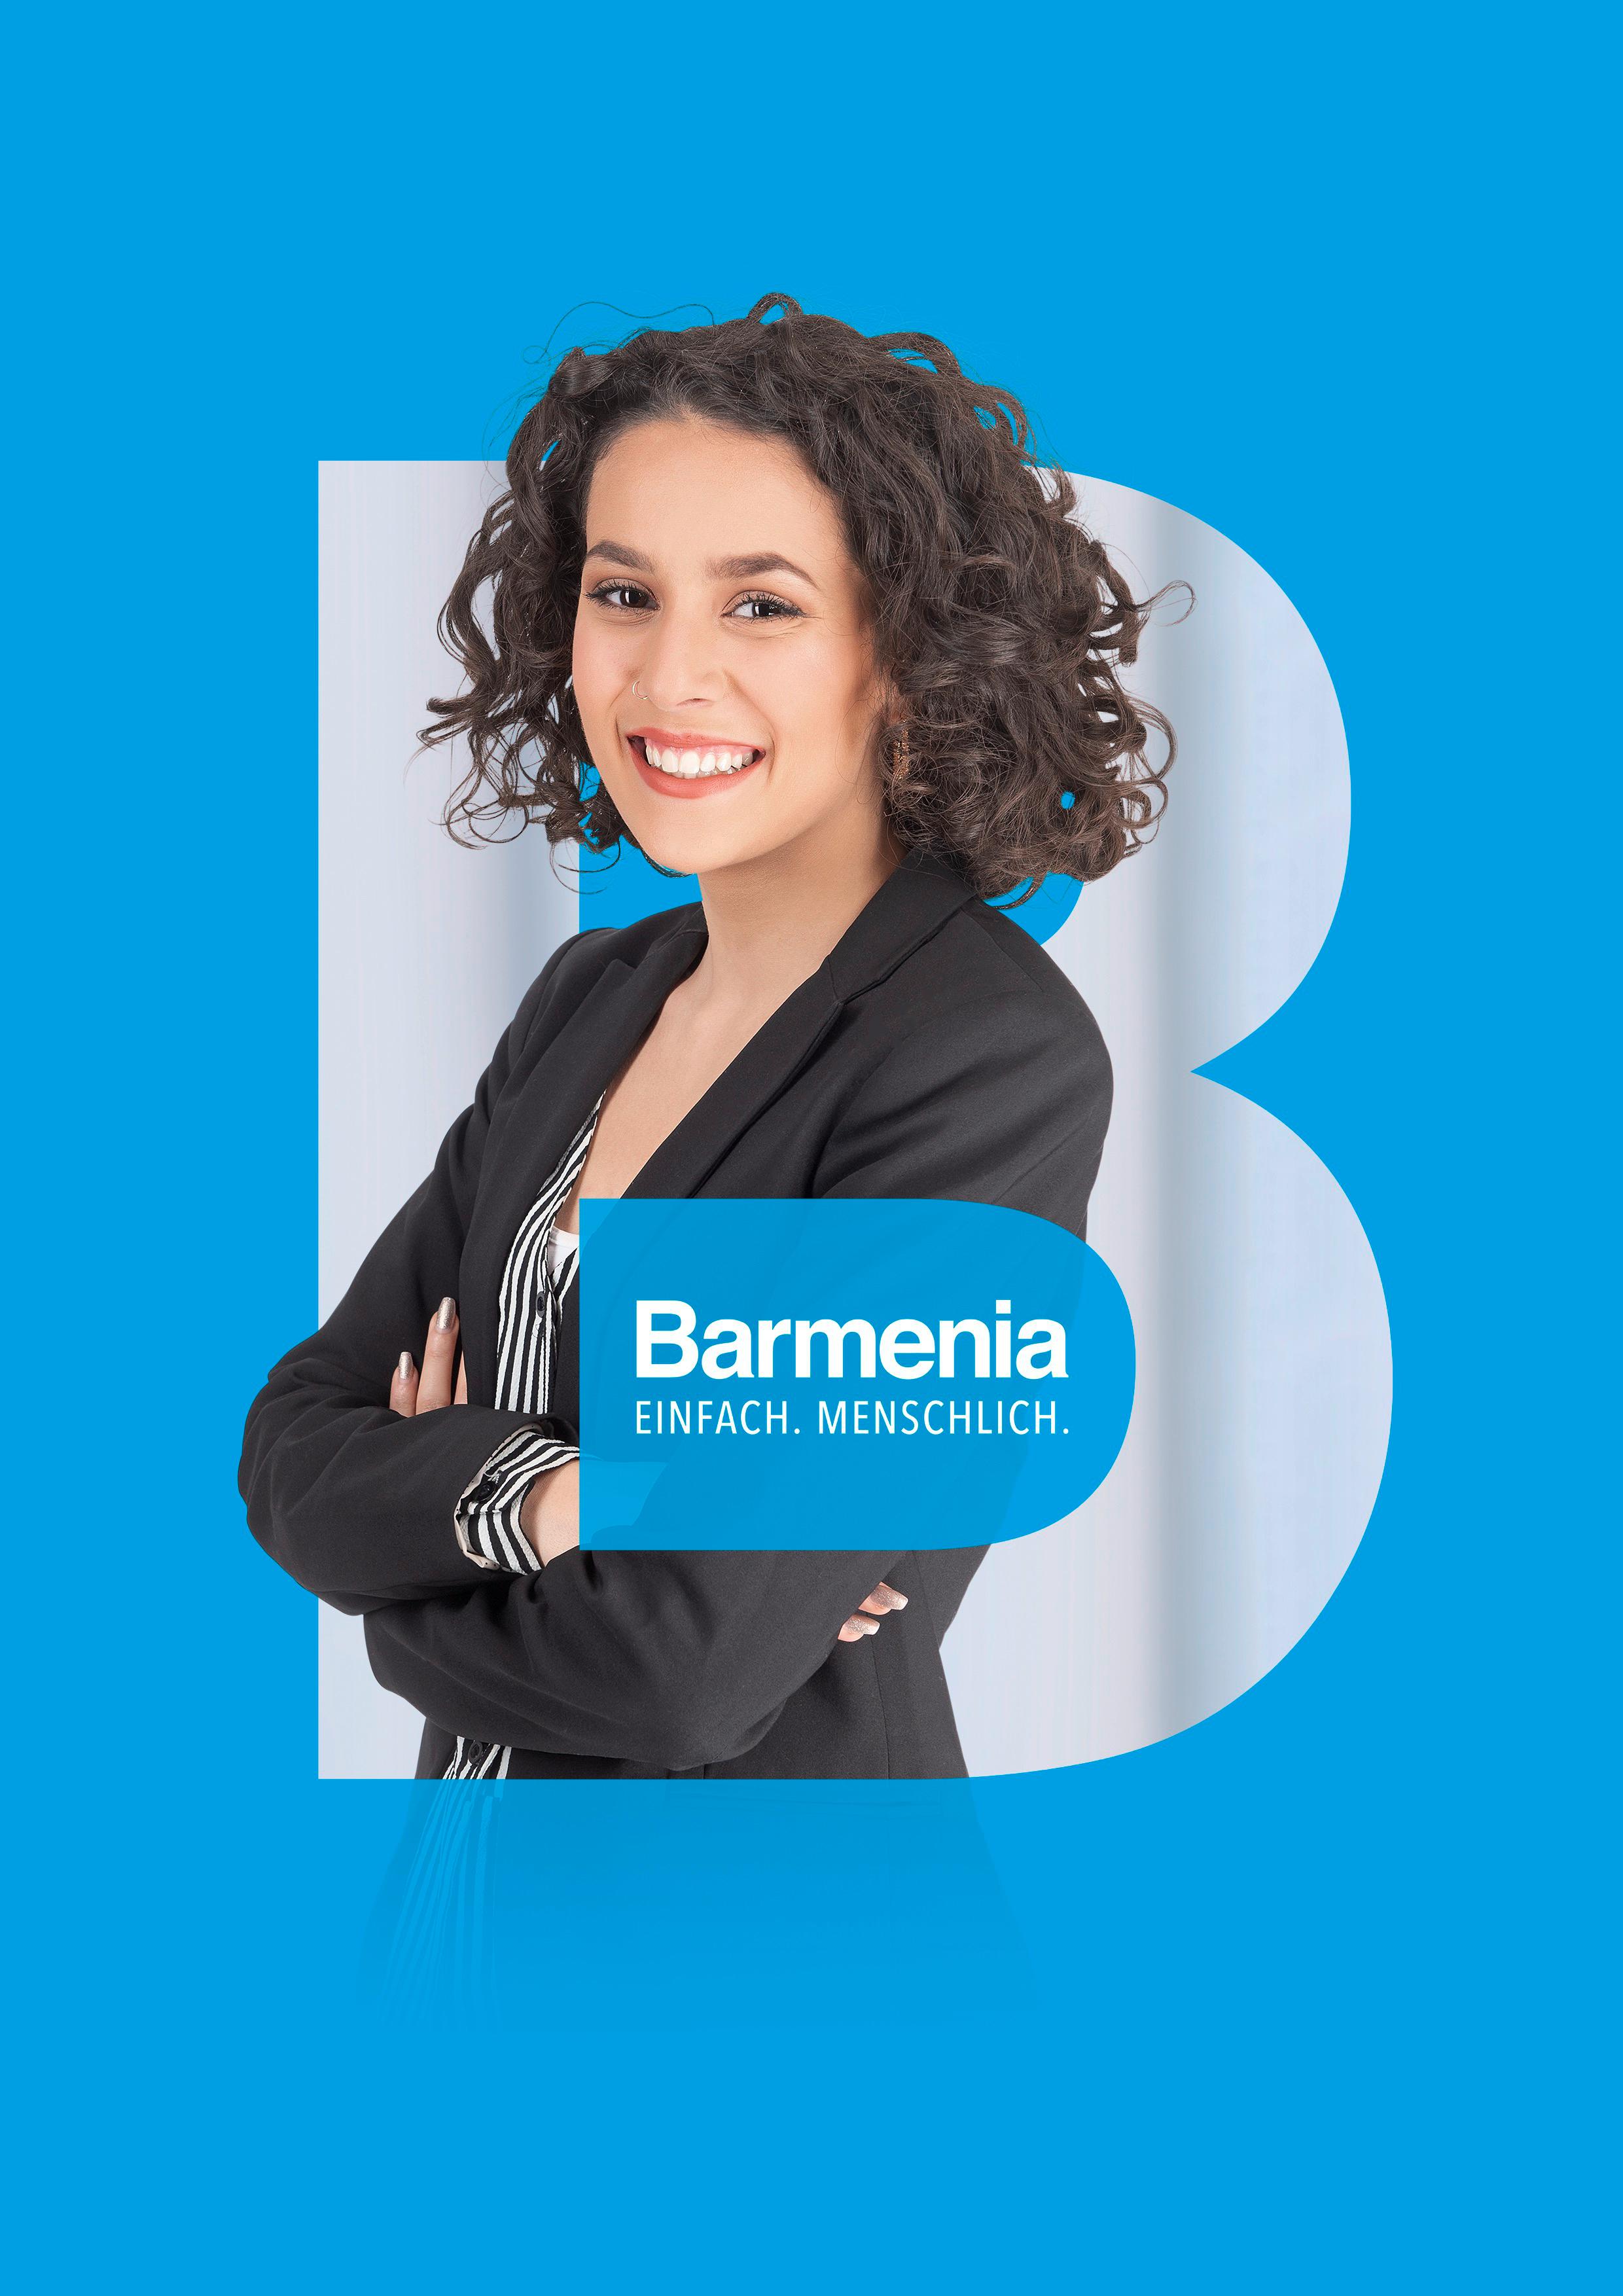 Cátia Martins Pereira. Ihre Ansprechpartnerin für die Barmenia Versicherung in Karlsruhe.